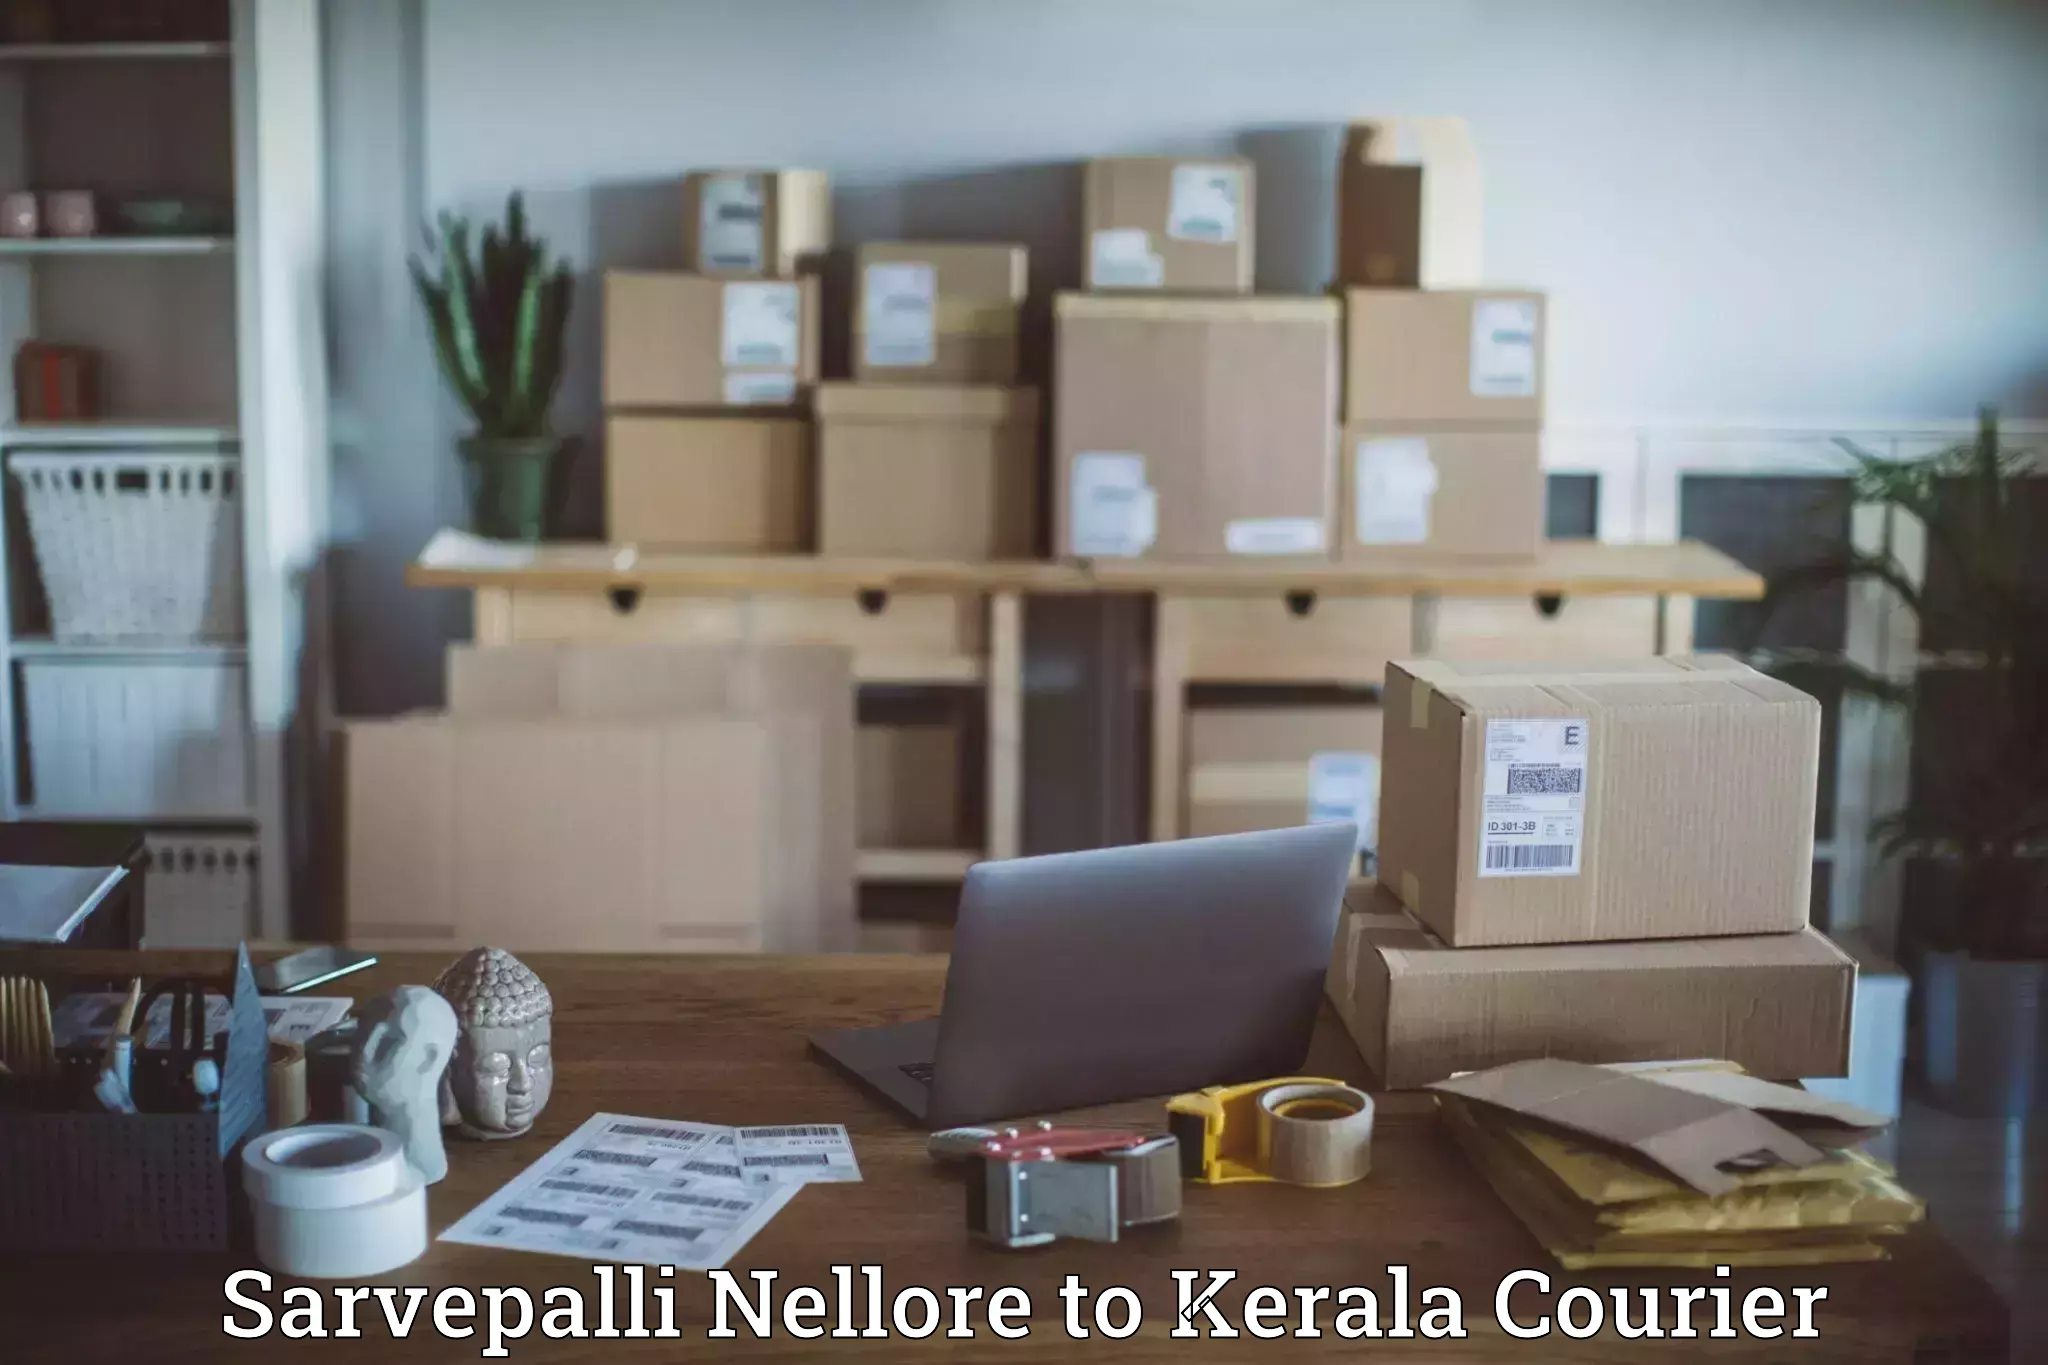 Local courier options Sarvepalli Nellore to Karimba